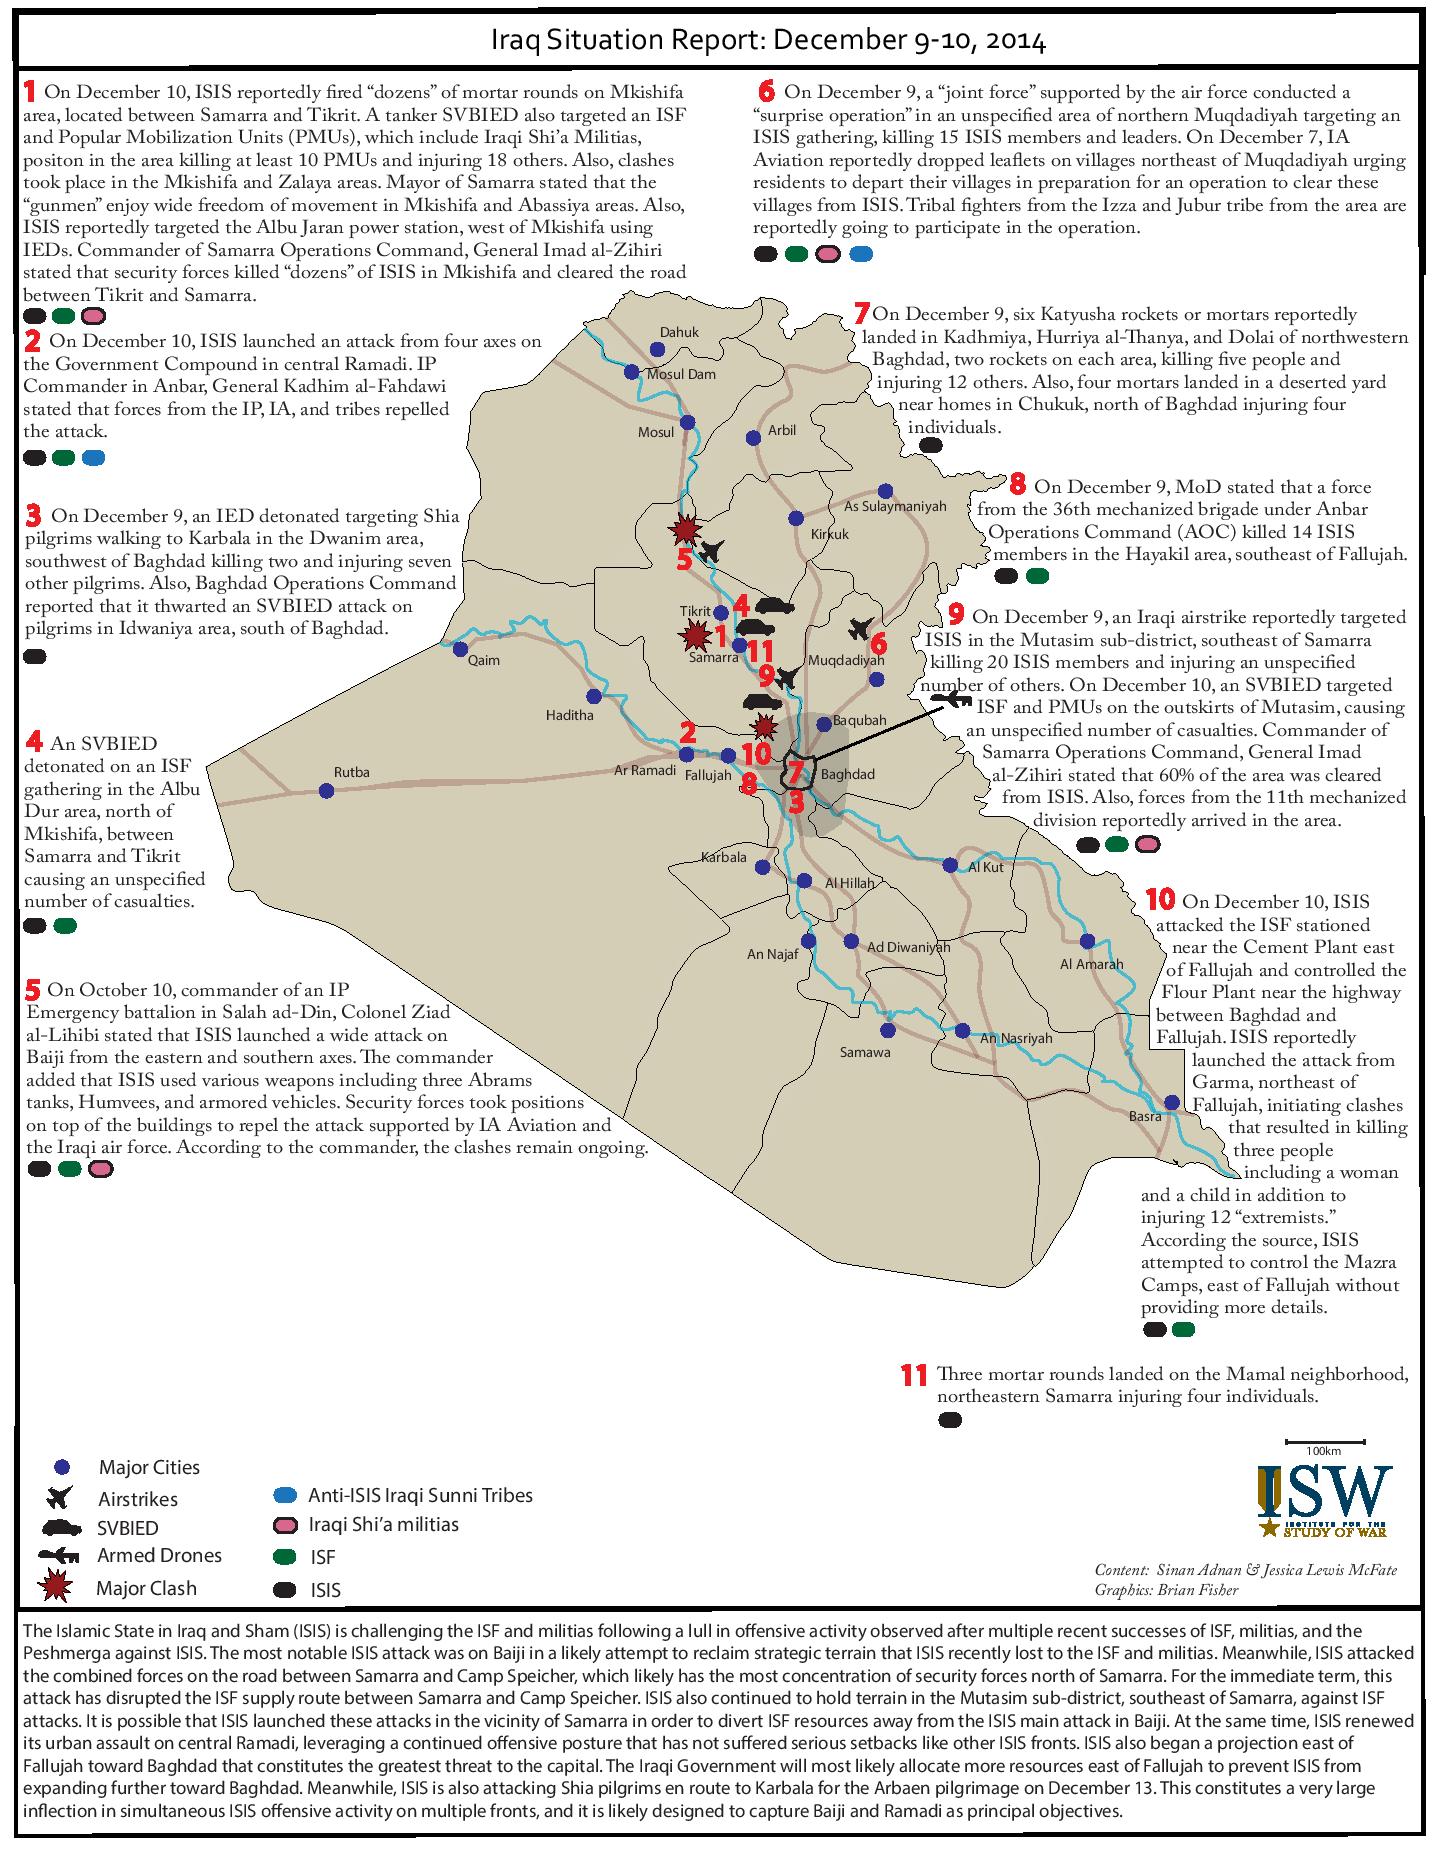 تقرير يكشف اوضاع العراق خلال يومي 9-10 كانون الاول/ديسمبر 2014